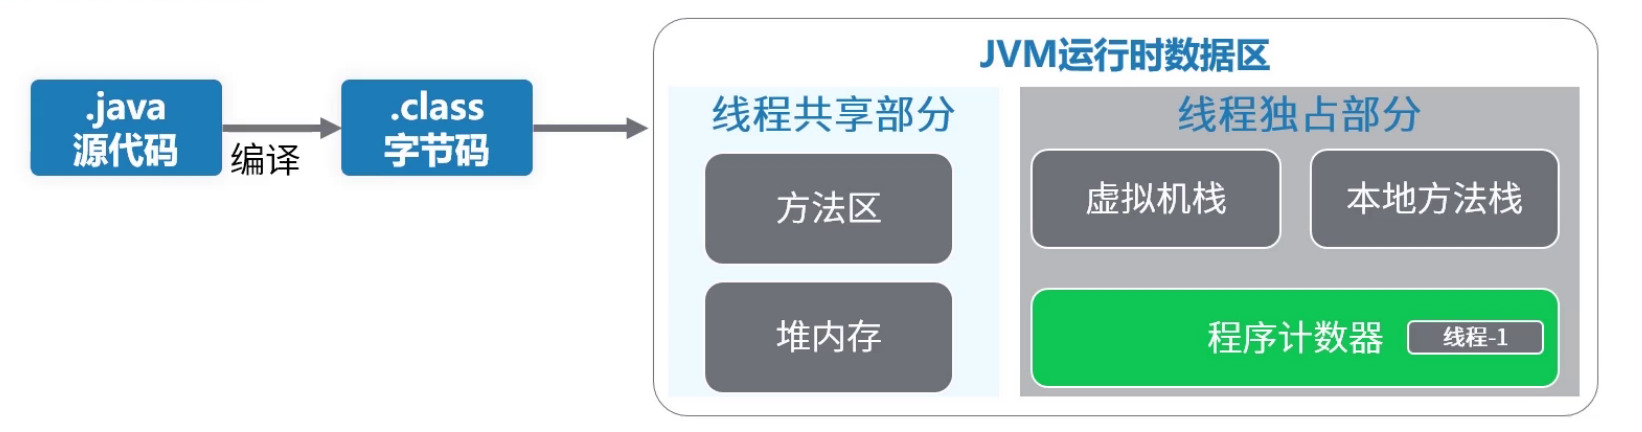 华为技术专家居然把JVM内存模型讲解这么细致「建议收藏」